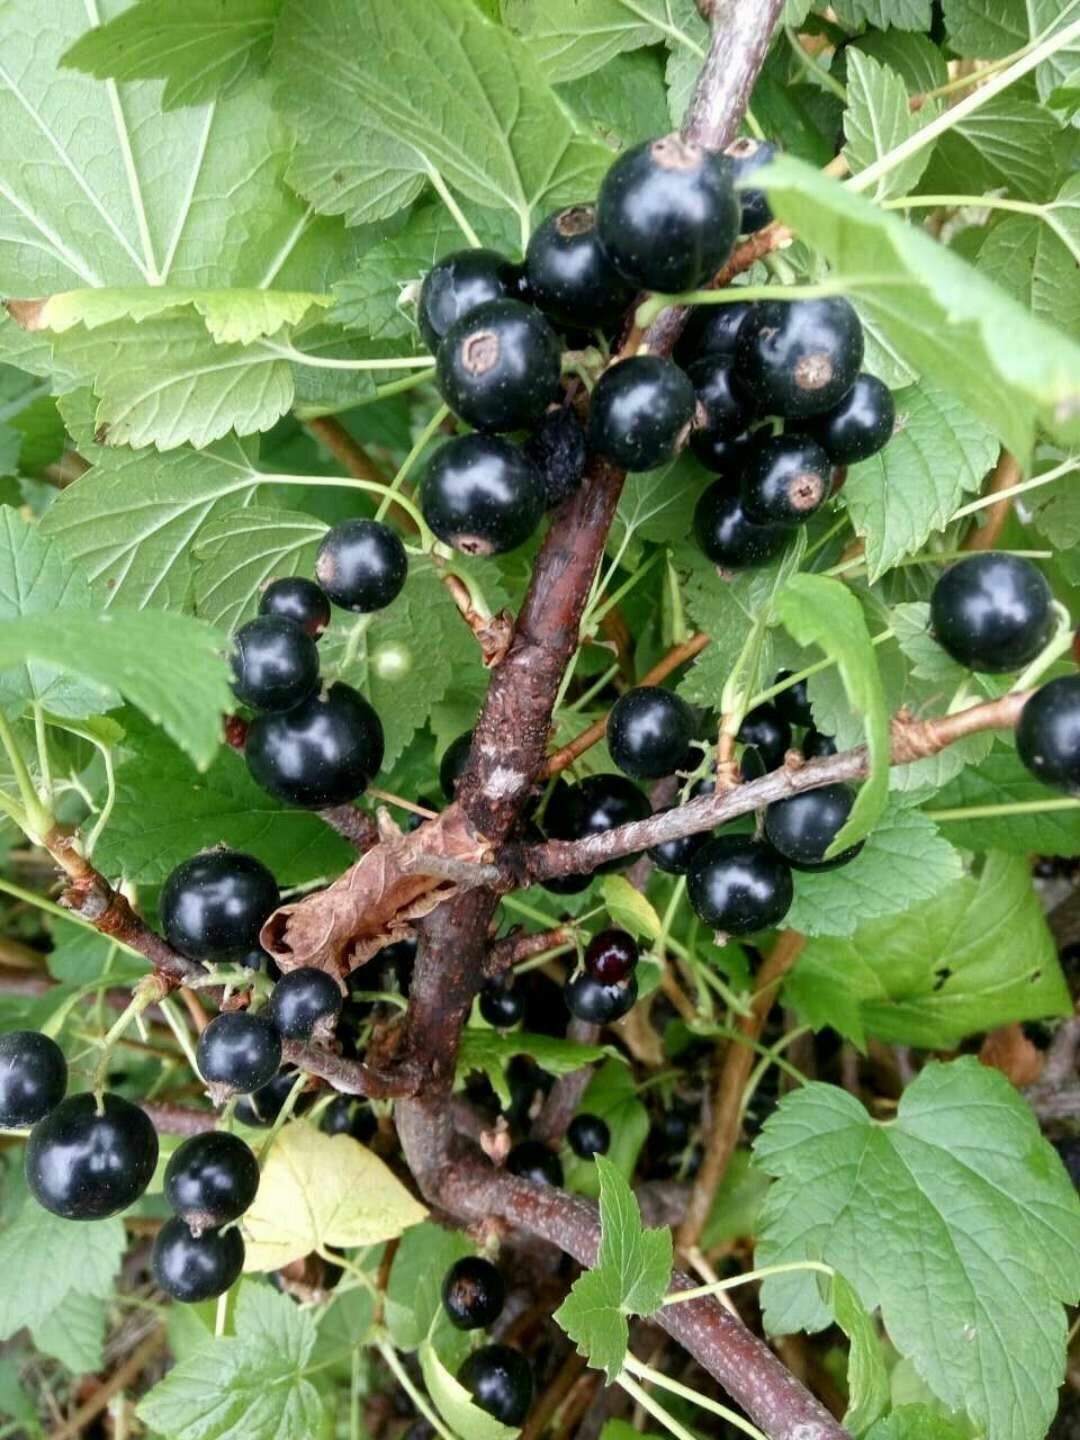 黑加仑苗 黑加仑 黑加仑葡萄树苗 一到三年苗 带苞发货 包成活